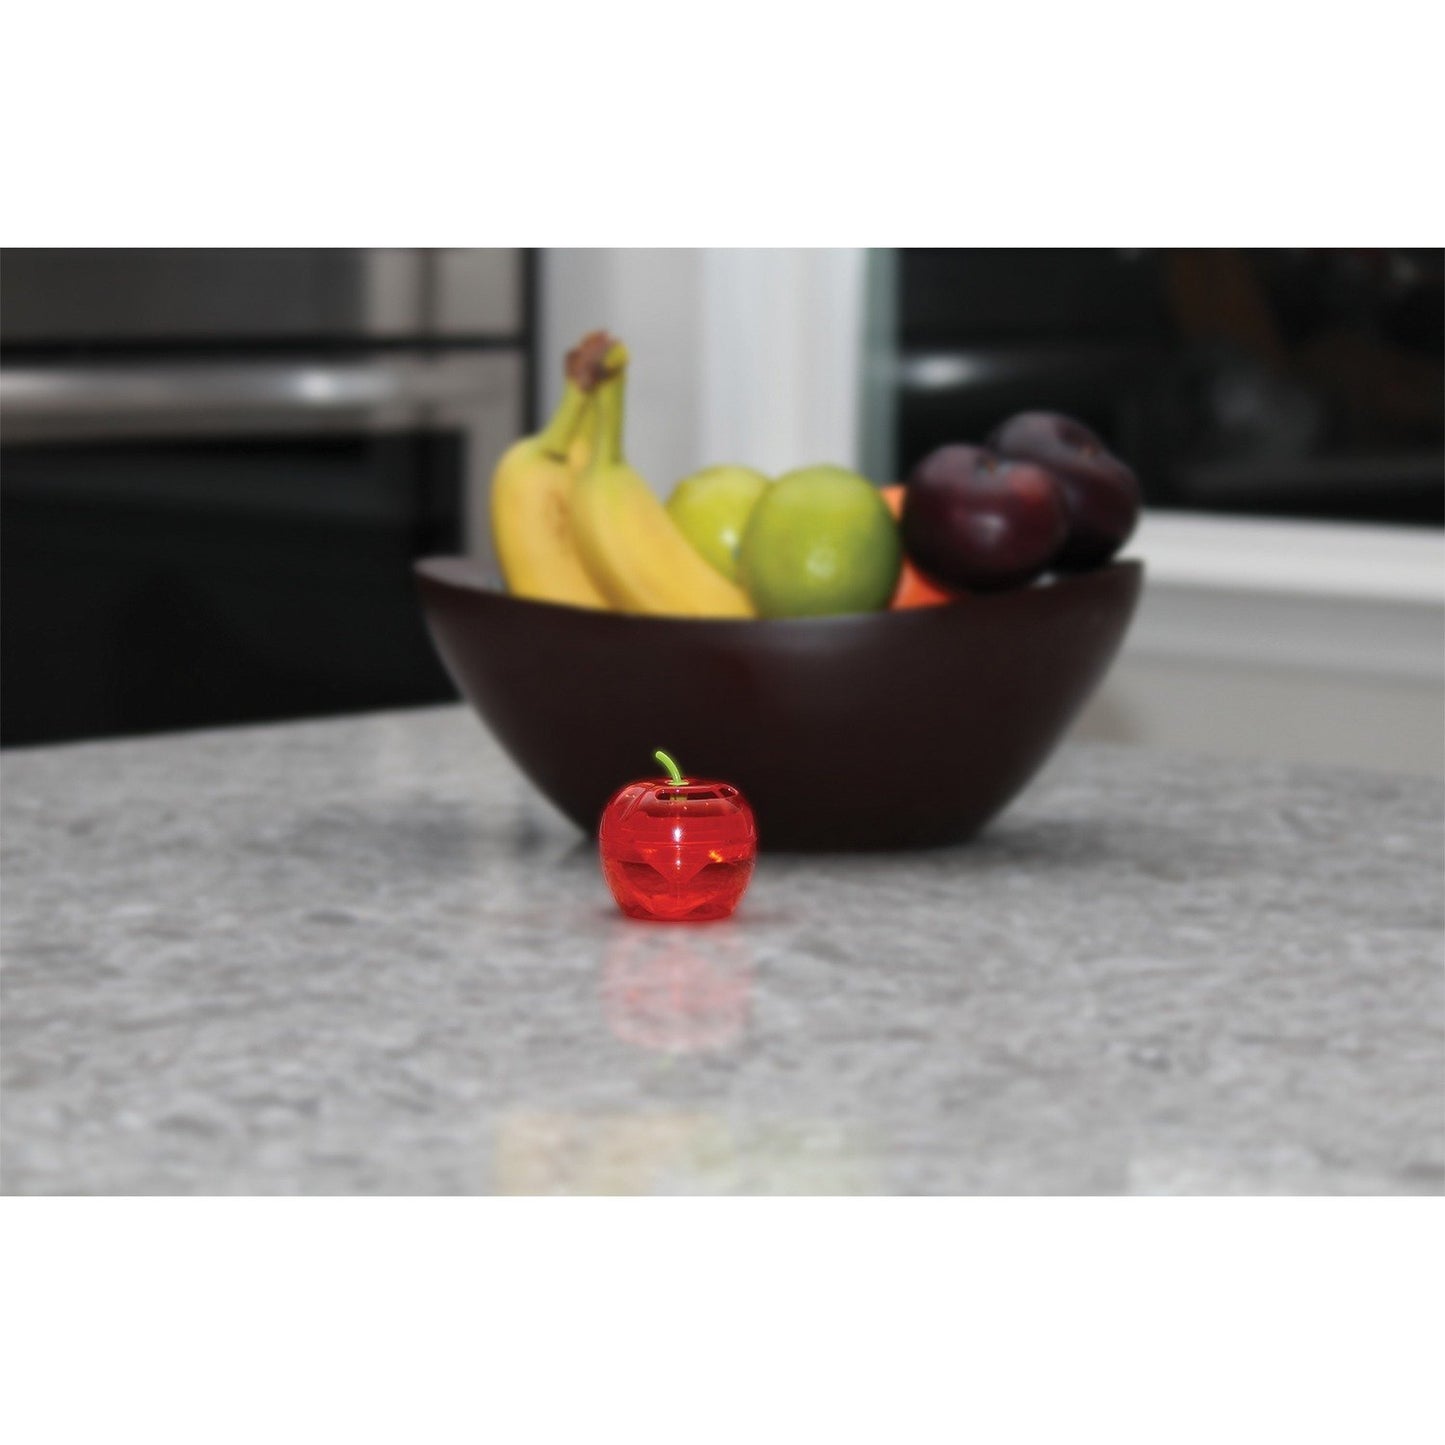 RAID FFTA-RAID Apple Fruit Fly Trap